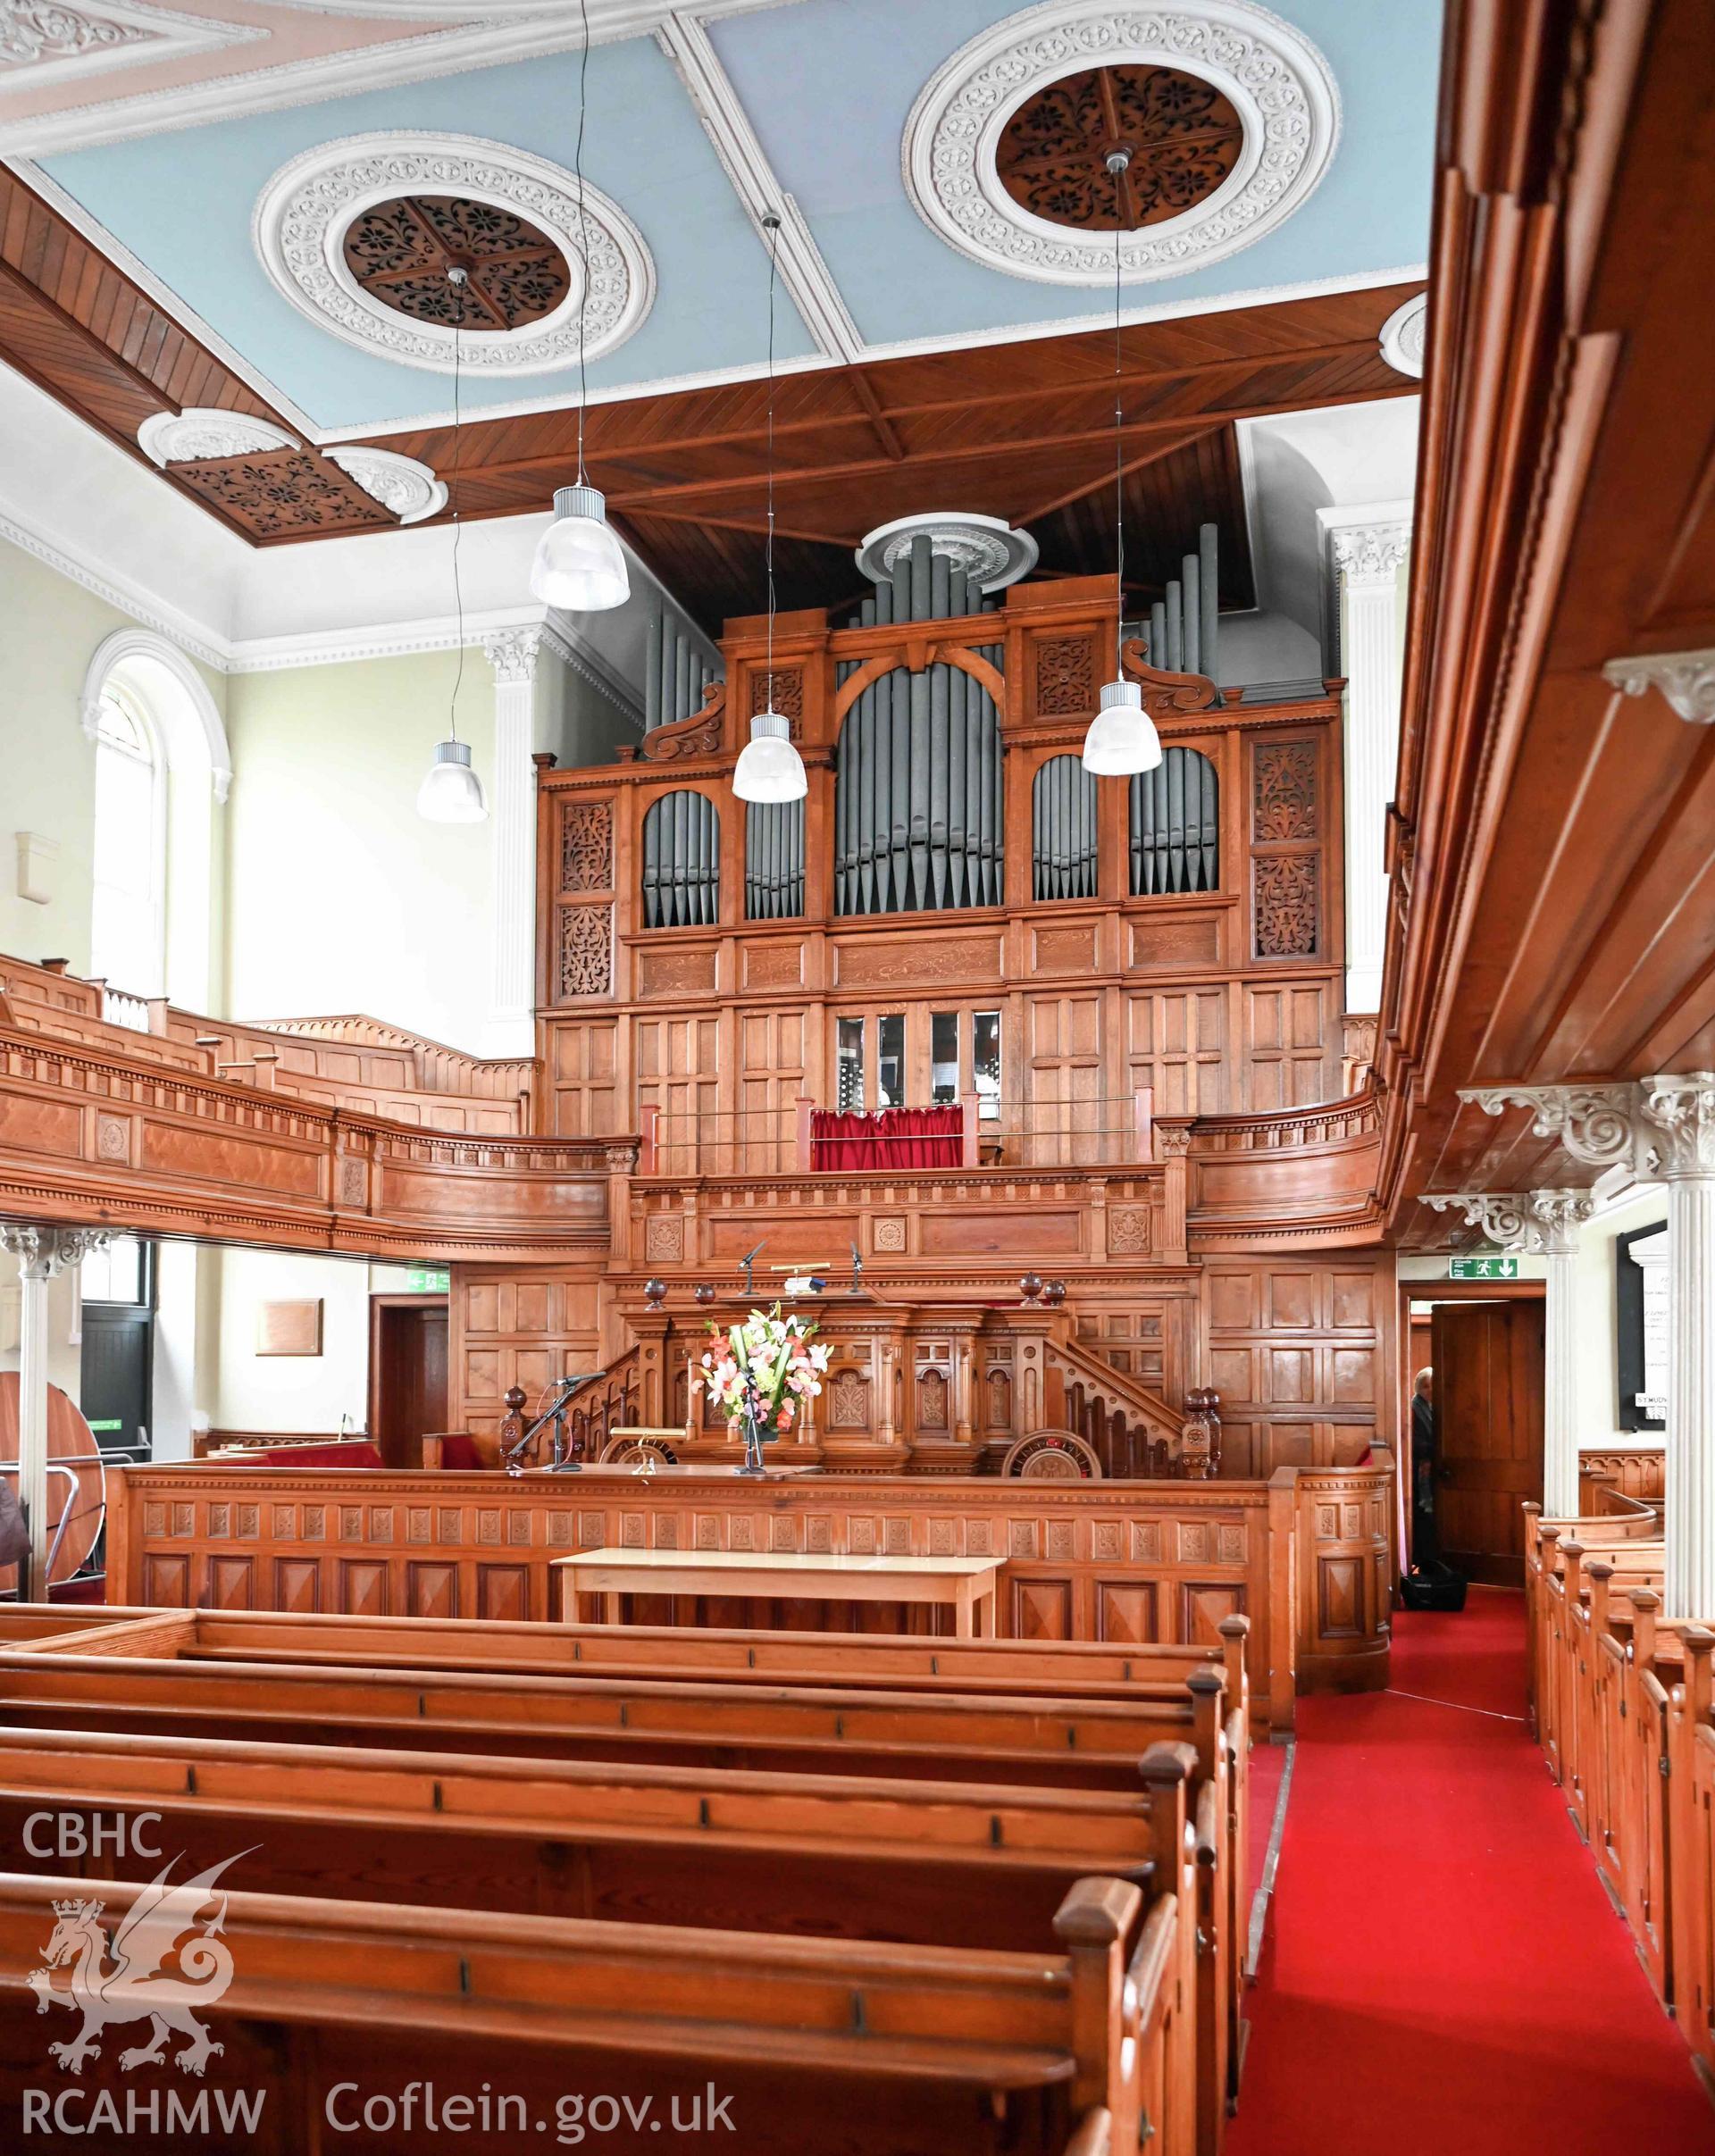 Capel Moreia, interior looking north-east towards pulpit, sedd fawr, and organ.